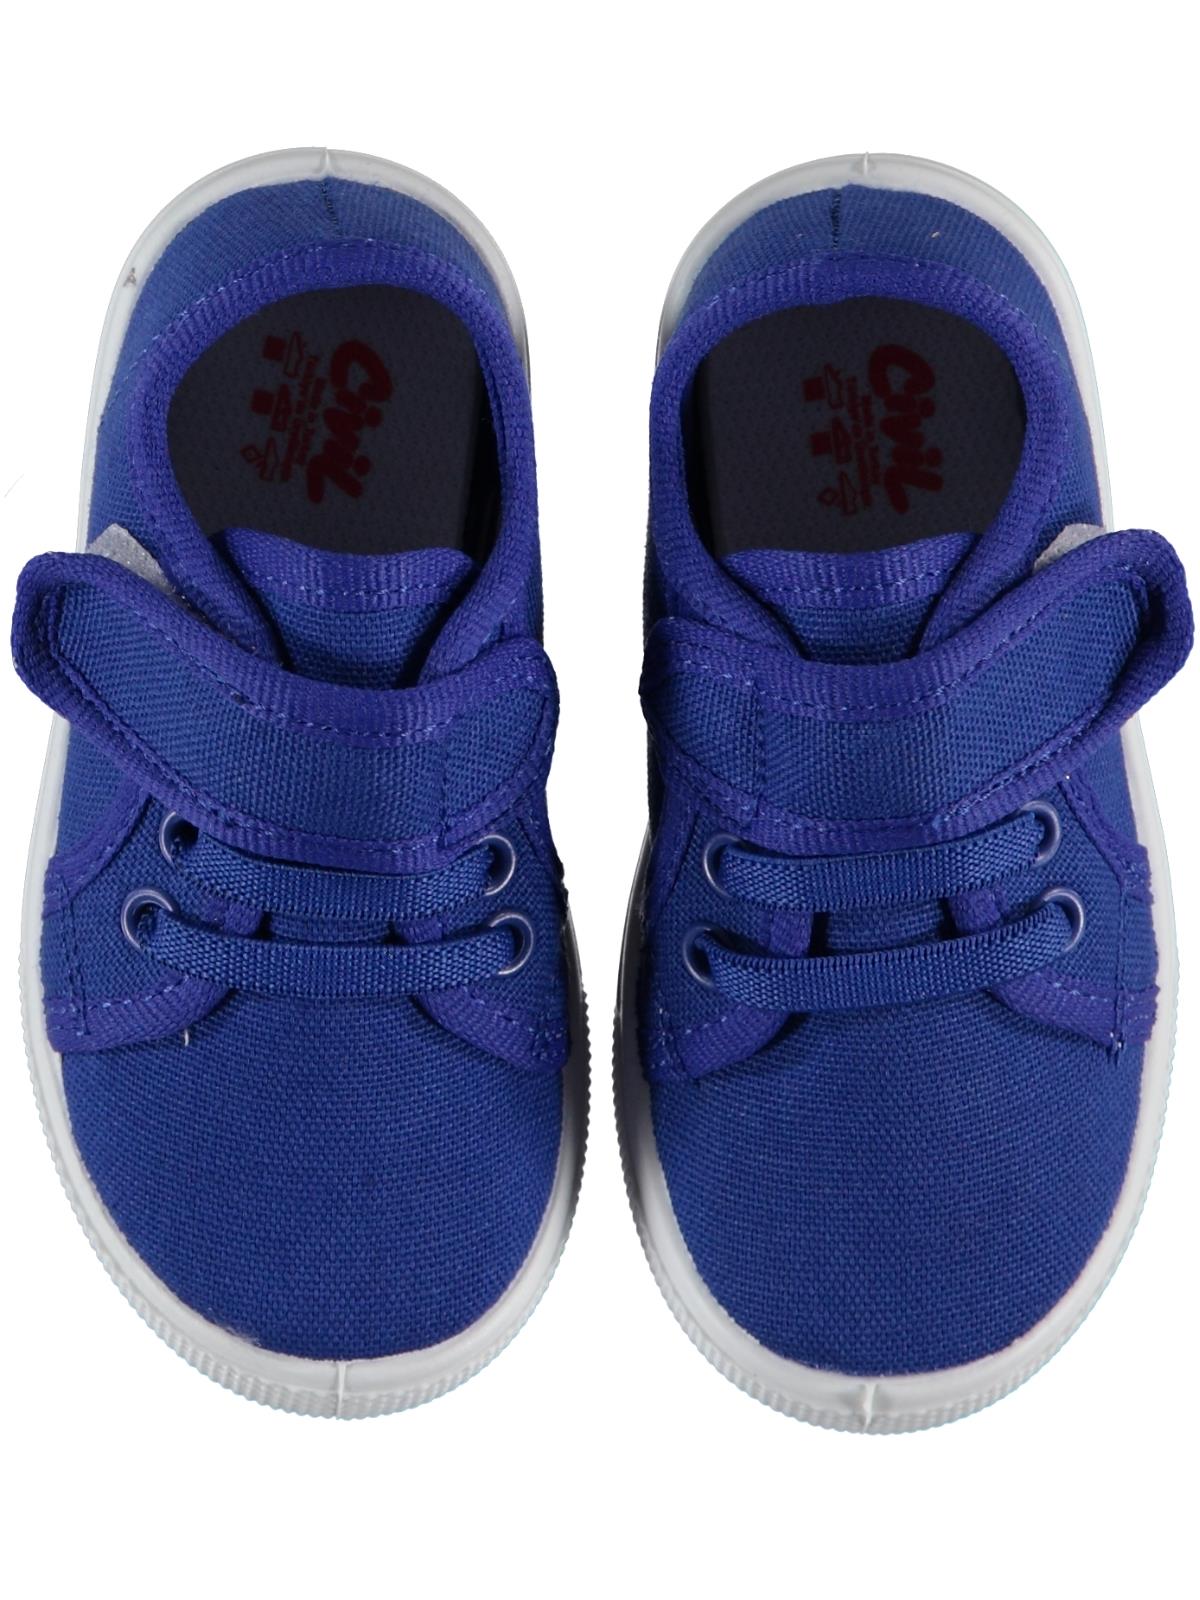 Civil Erkek Bebek Keten Ayakkabı 21-25 Numara Saks Mavisi